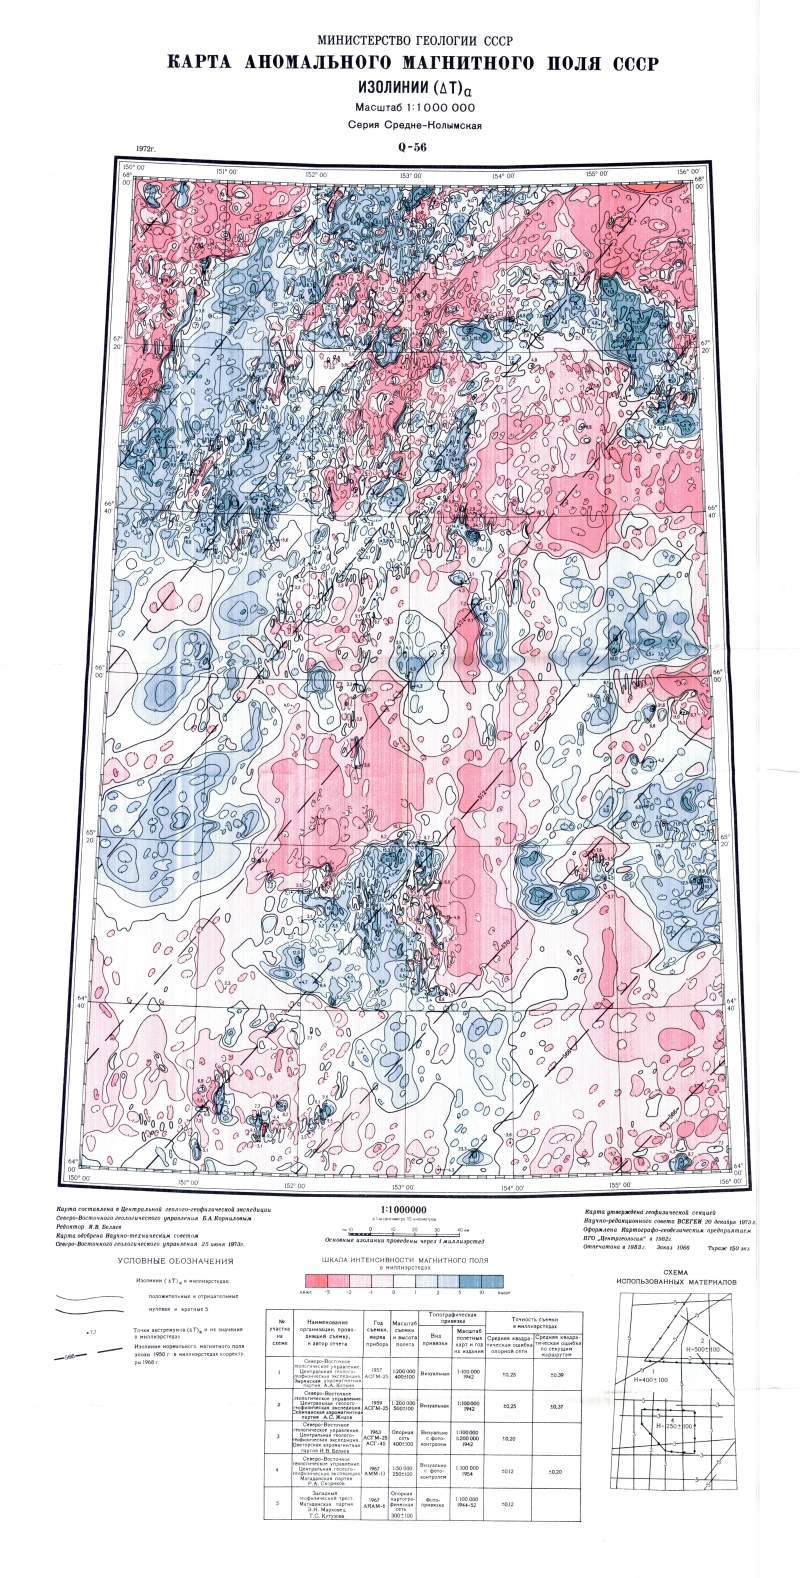 Примеры магнитных аномалий в россии. Карта аномального магнитного поля. Карта аномальных полей. Карта магнитных аномалий Украины. Карта магнитных аномалий Костромской области.